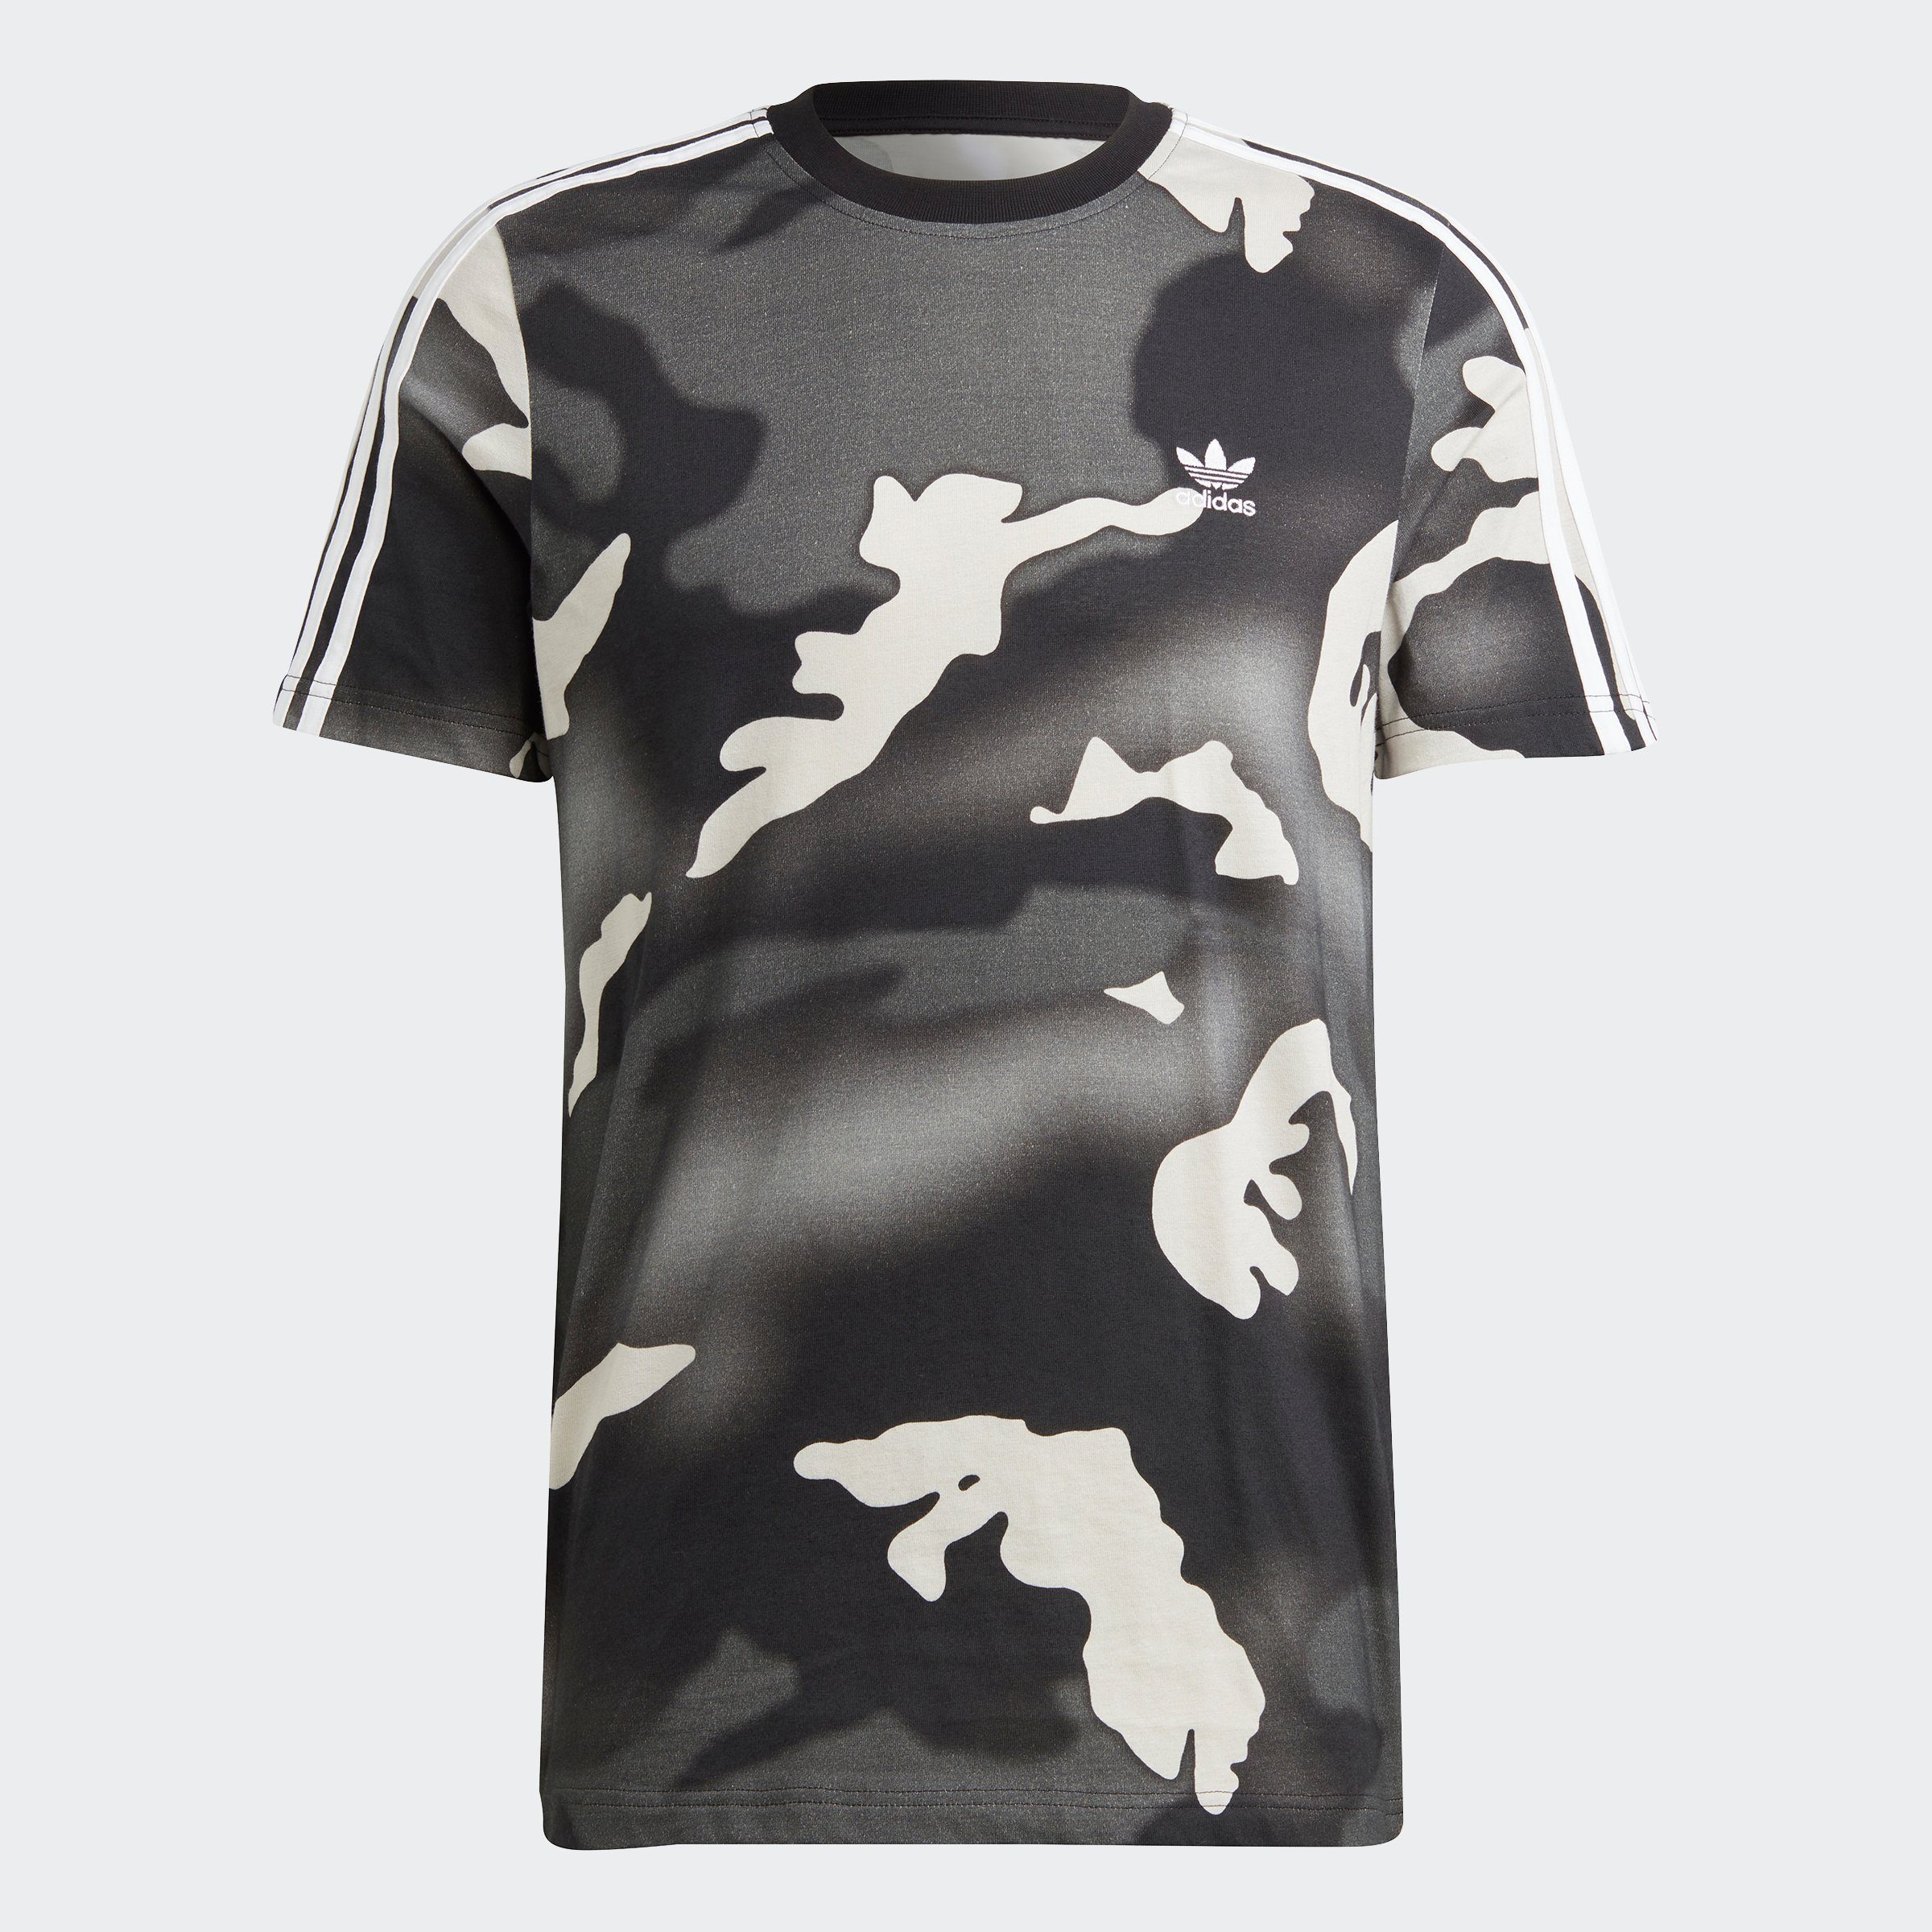 PRINT ALLOVER adidas GRAPHICS CAMO T-Shirt Originals